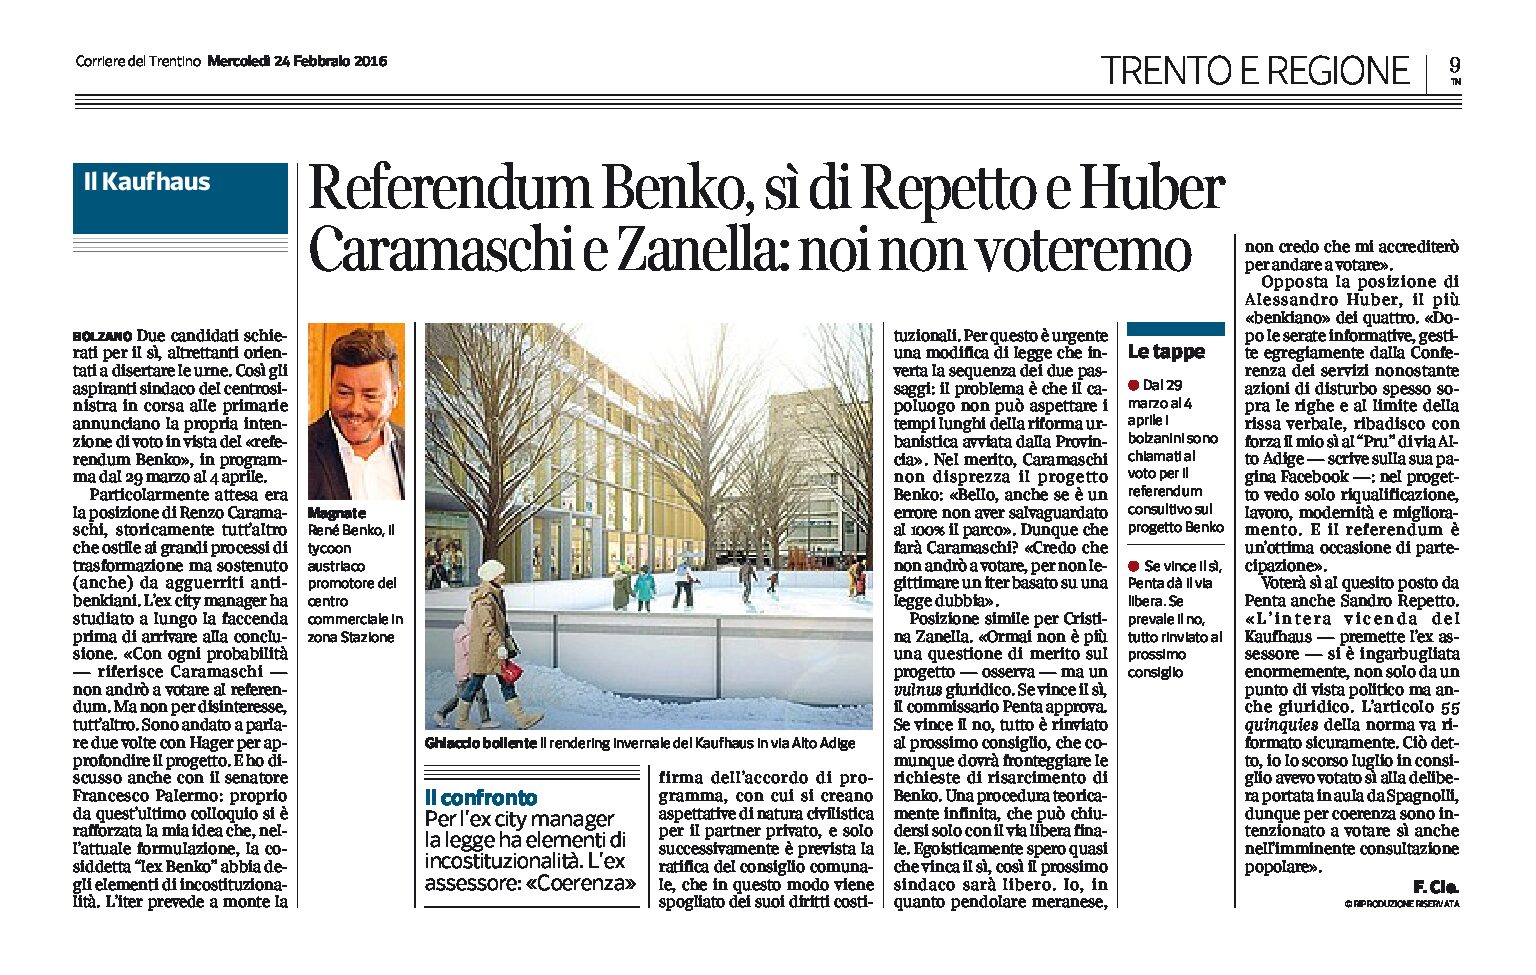 Bolzano: referendum Benko